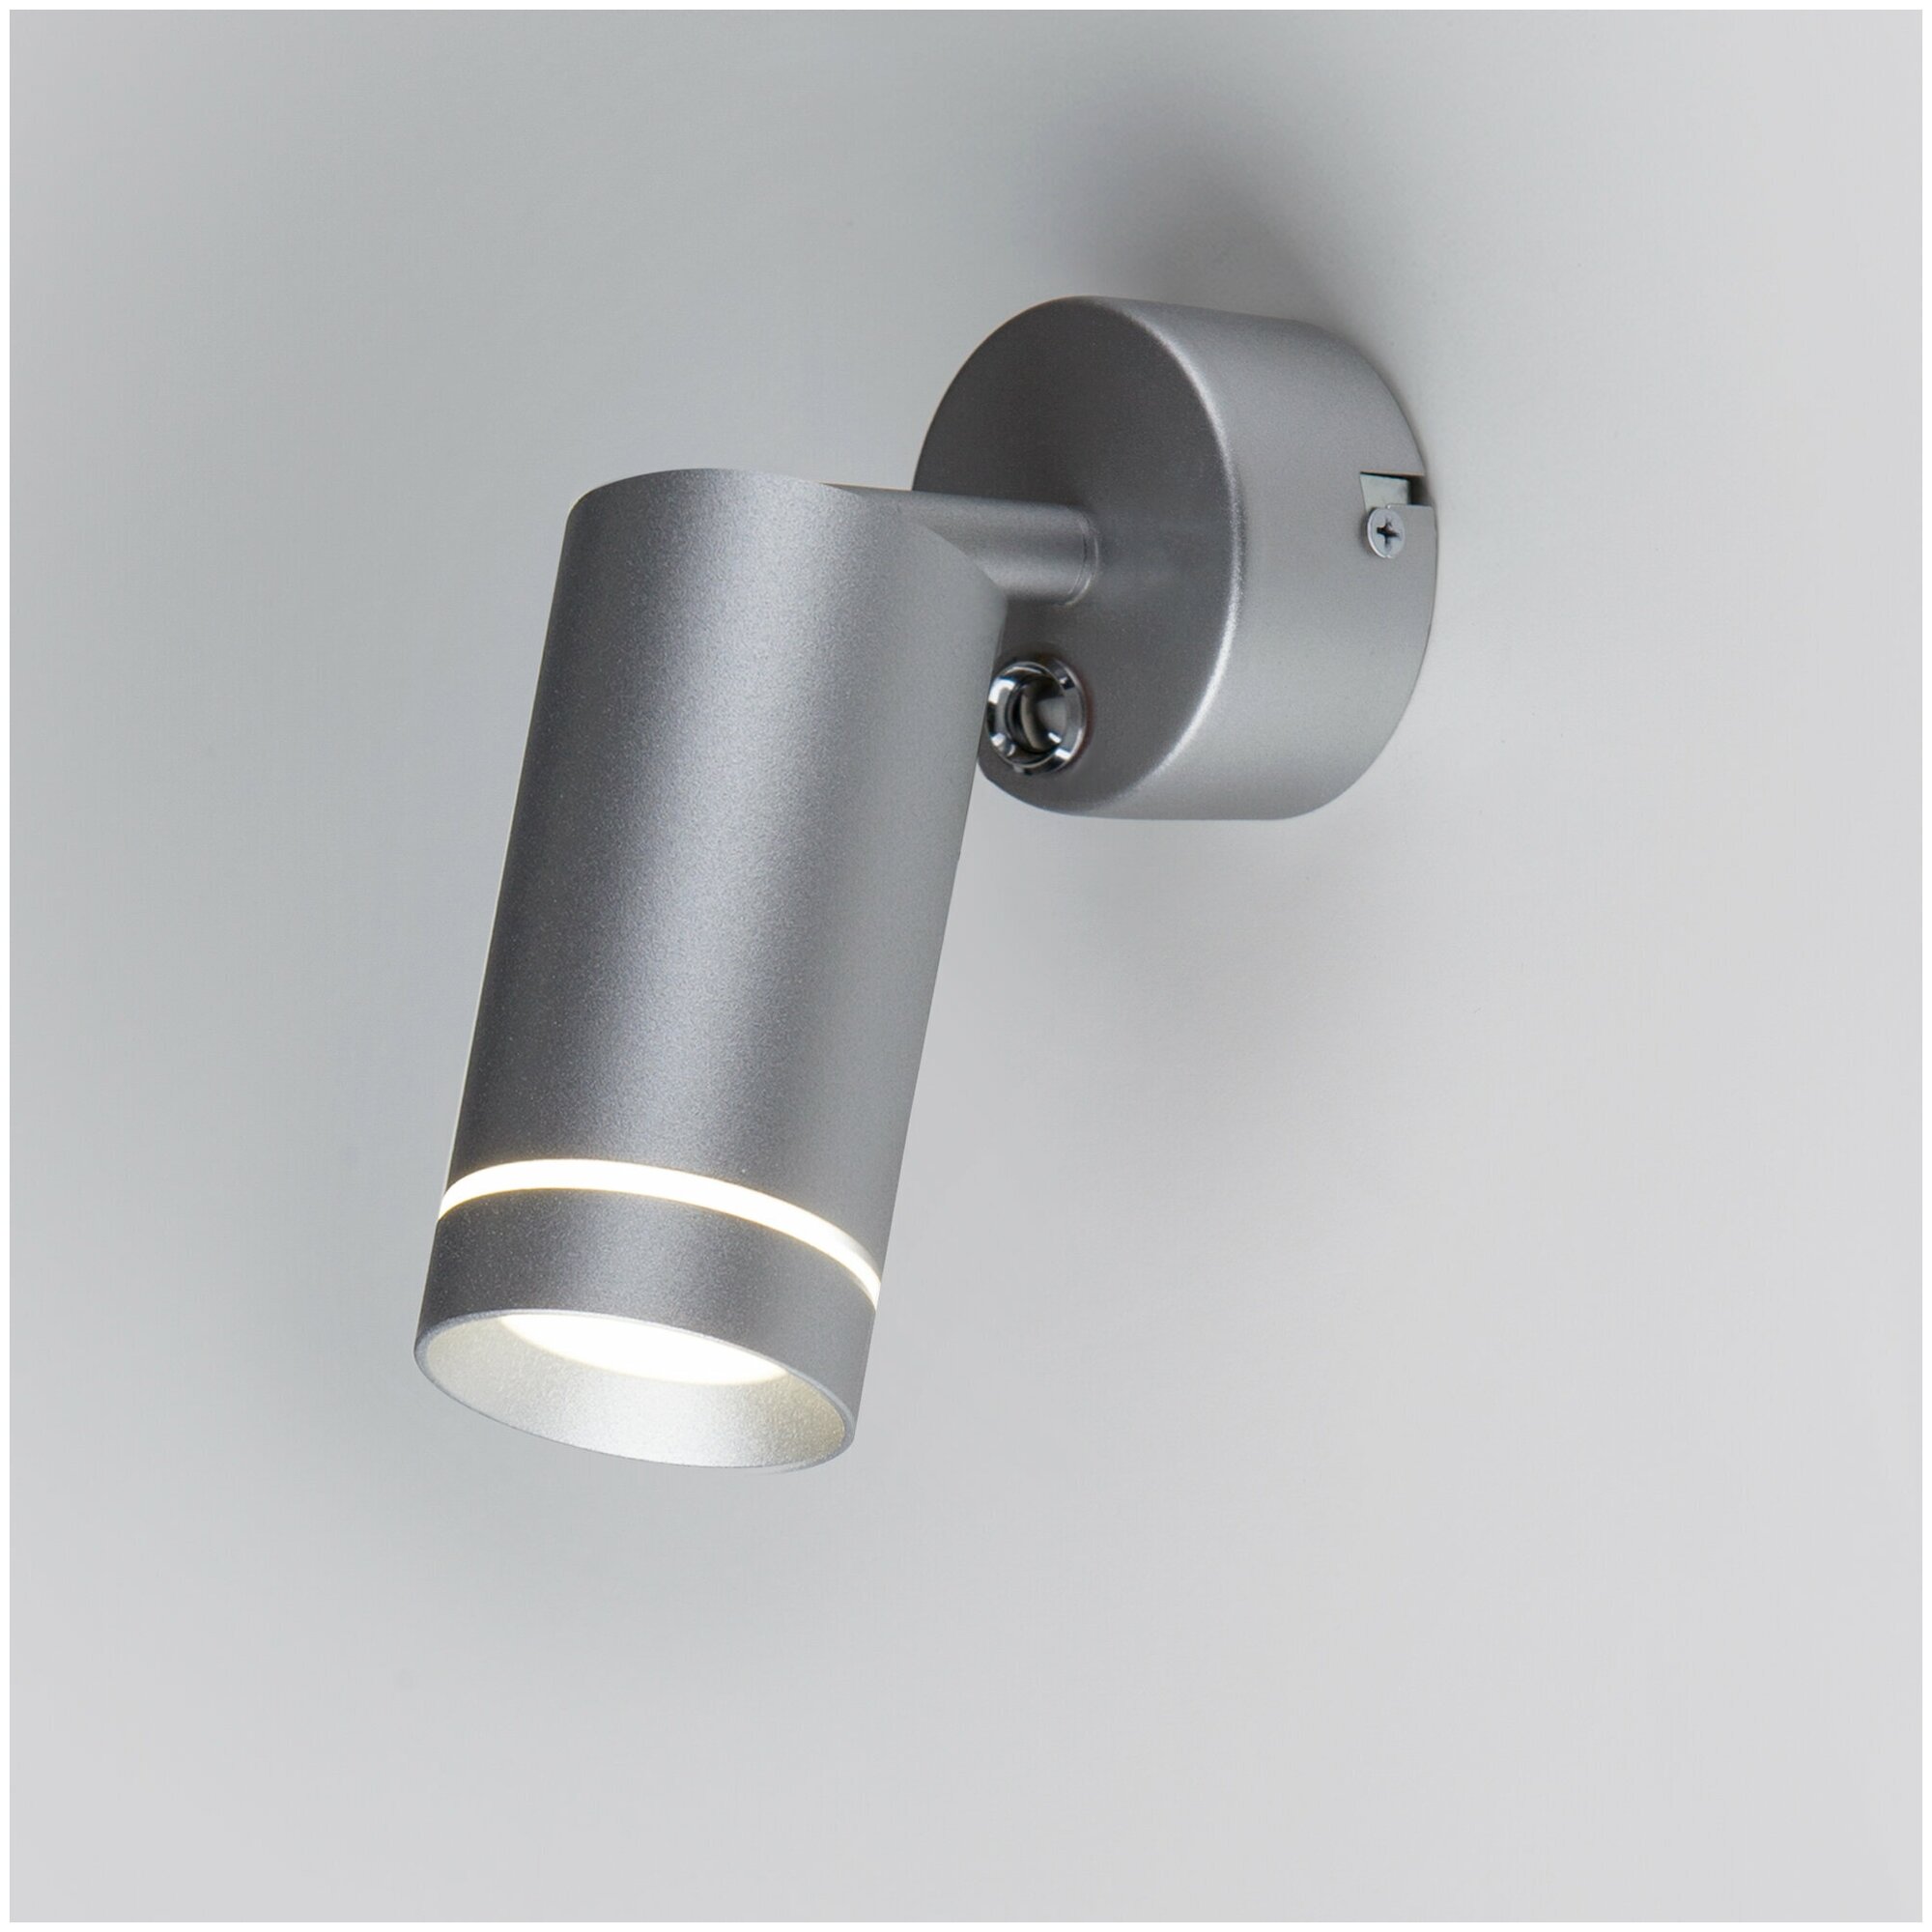 Спот / Настенный светодиодный светильник с поворотным плафоном Elektrostandard Glory SW, 4200 К, 7 Вт, цвет серебро (MRL LED 1005)